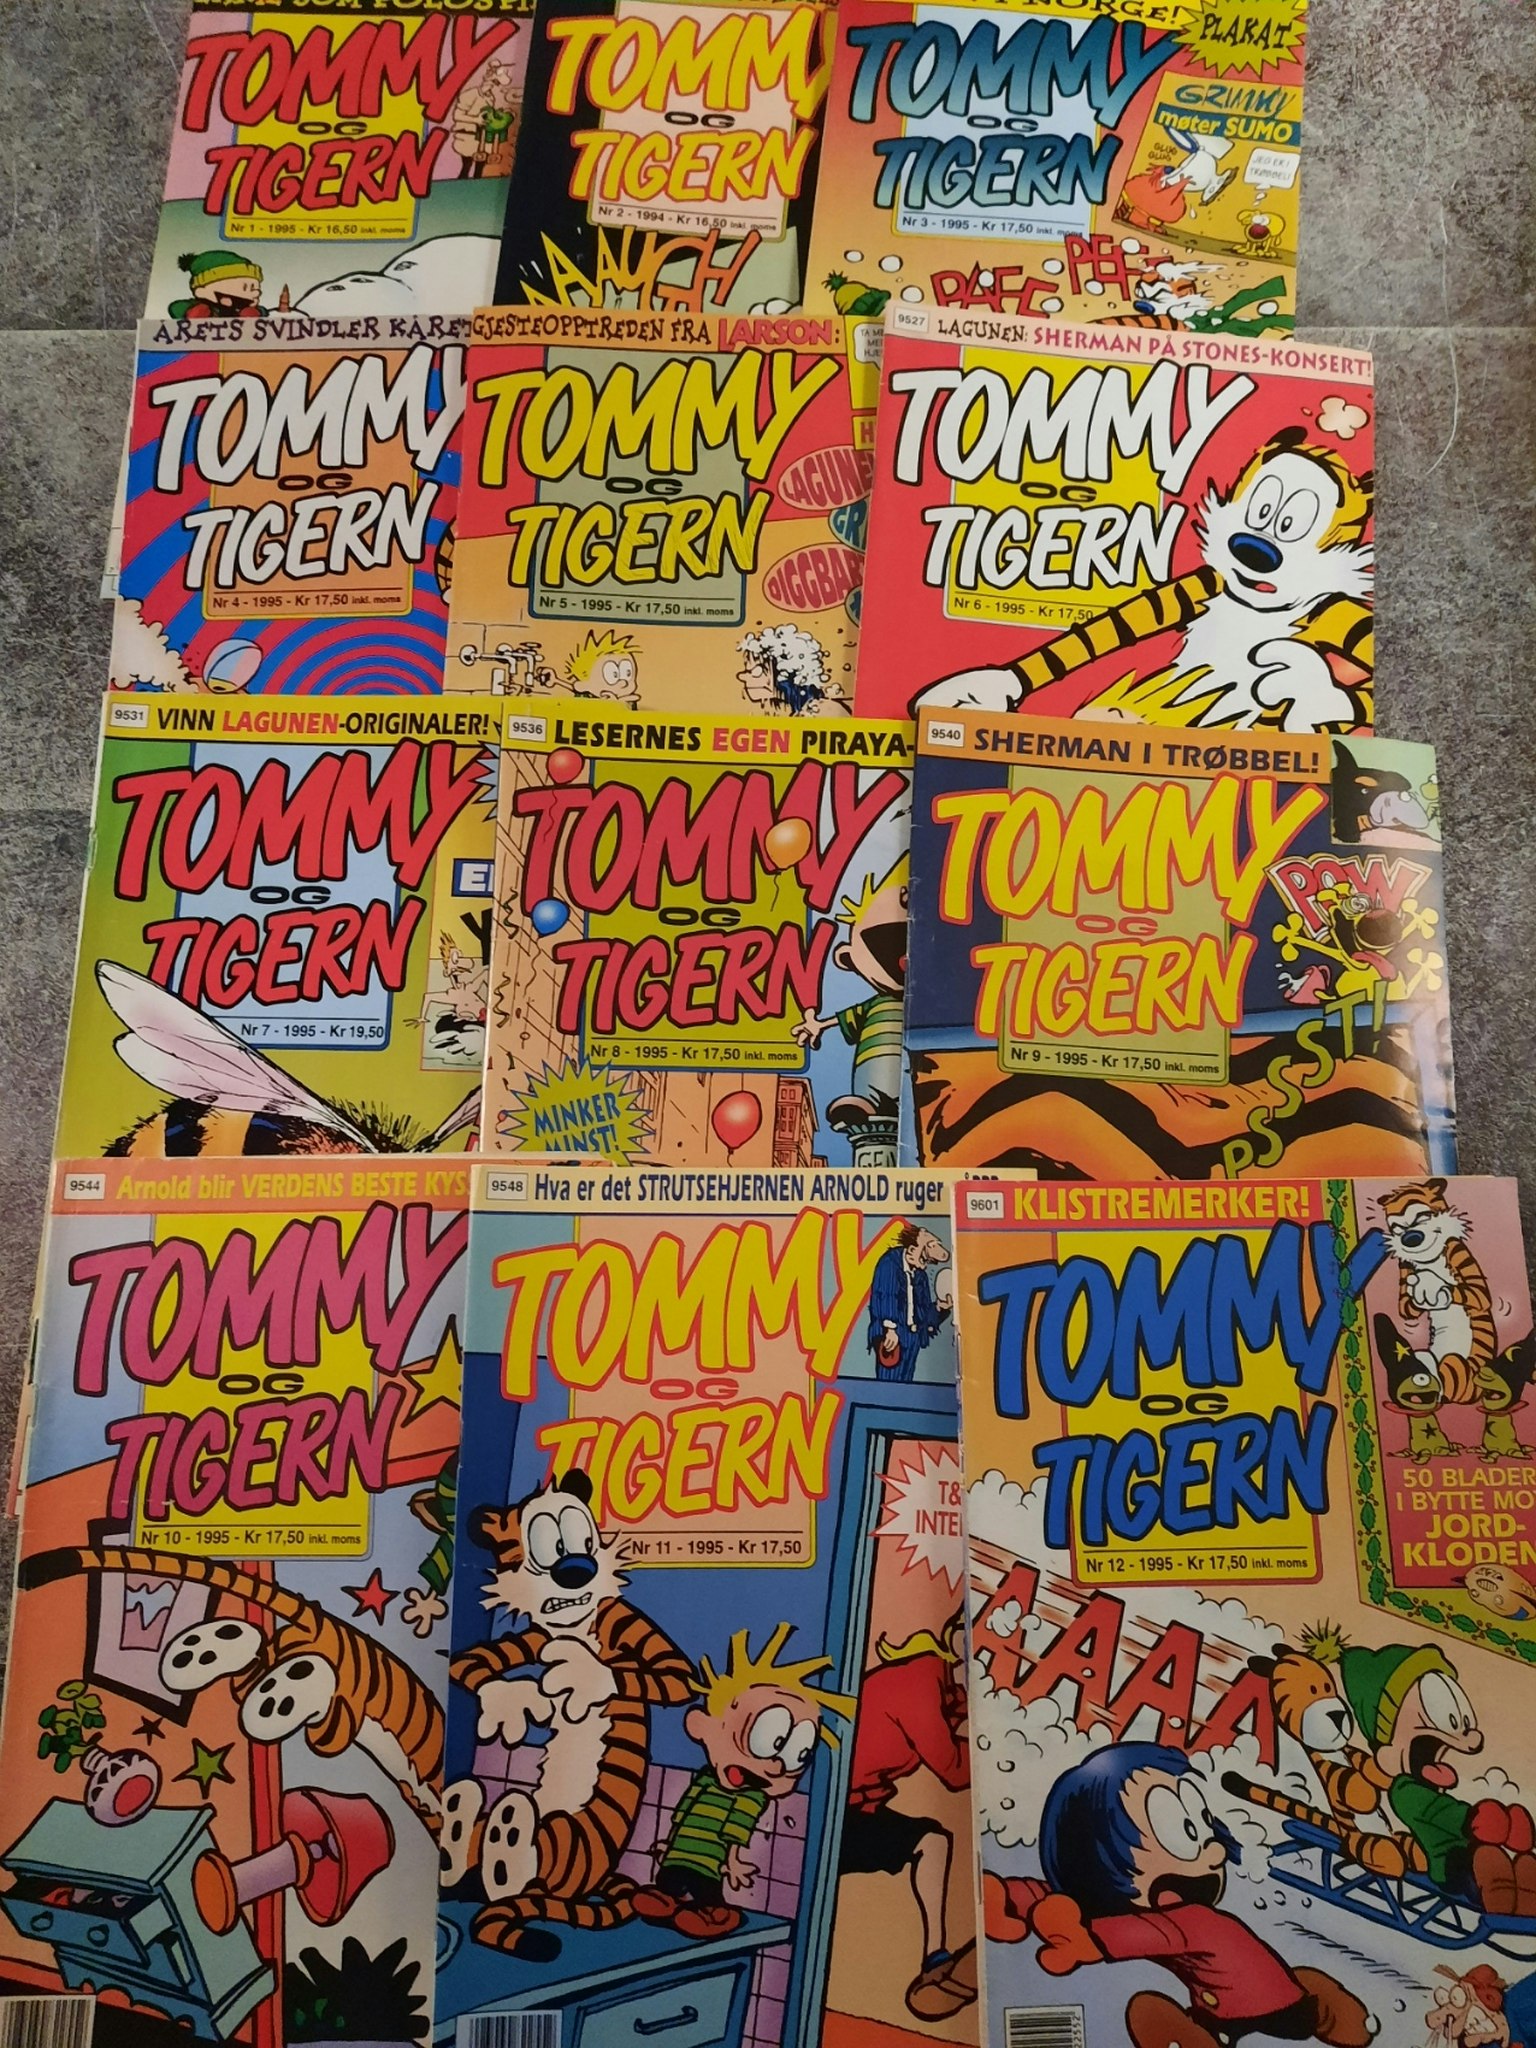 Tommy og Tigern 1995 komplett